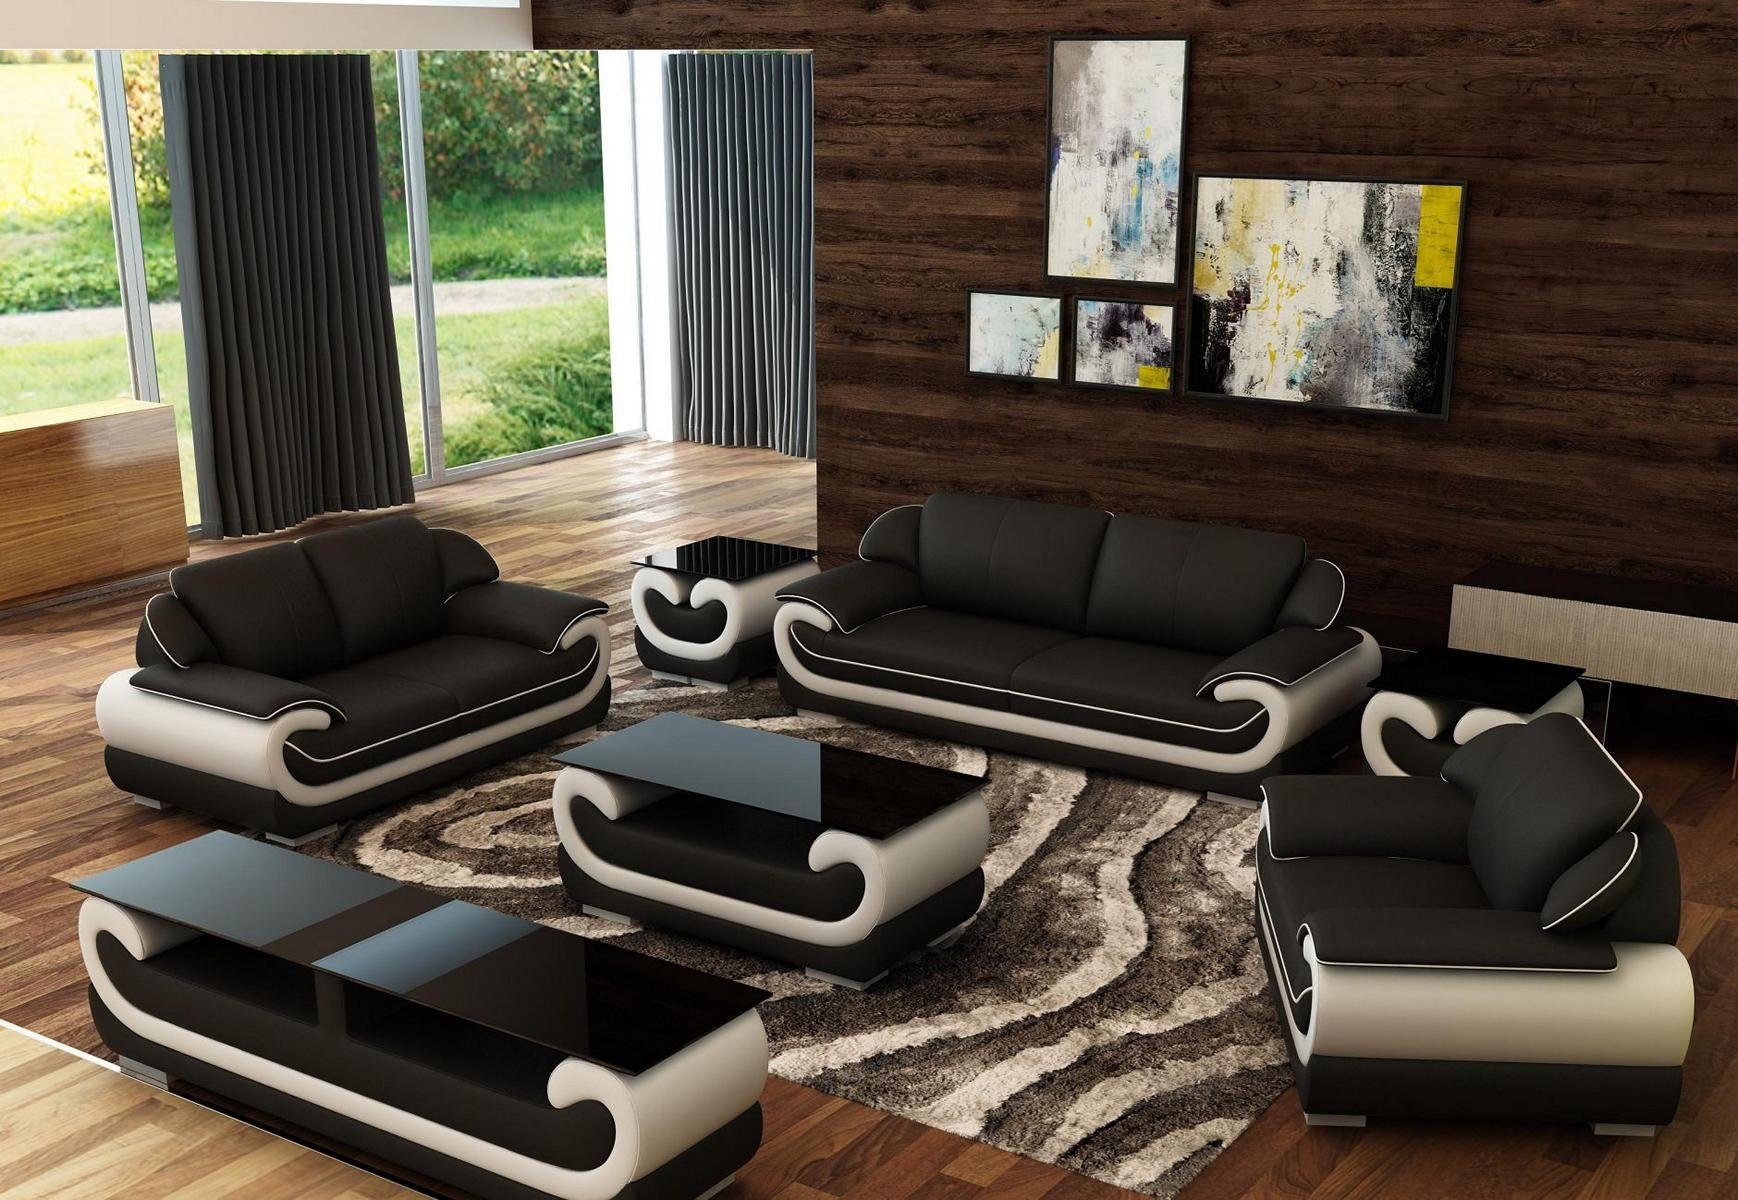 JVmoebel Sofa Sofas 3+2+1 Sitzer Set Design Sofas Polster Couchen Leder Relax, Made in Europe Schwarz/Beige